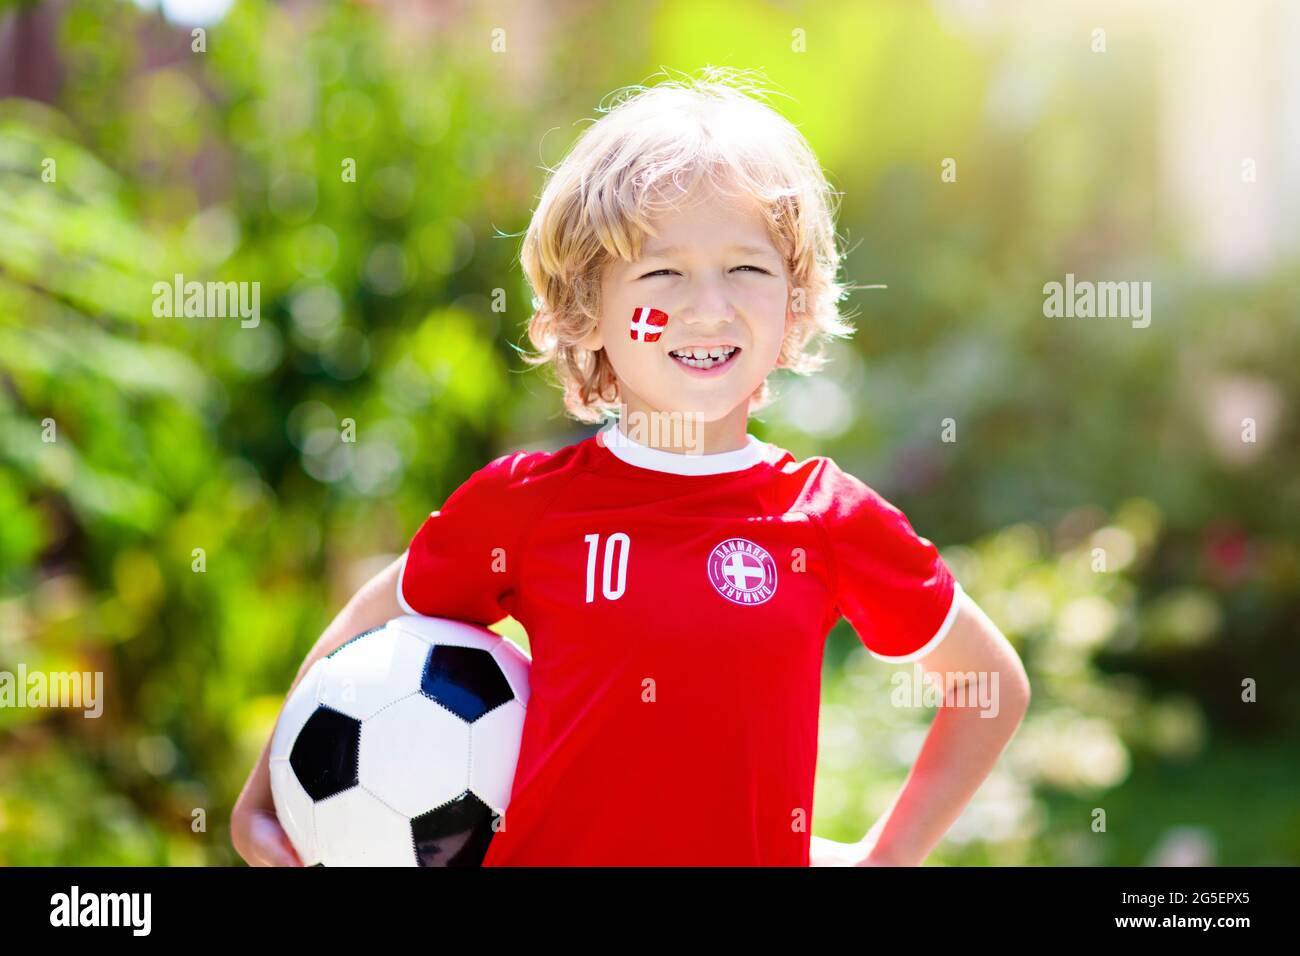 Dänemark Fußballfan jubelt. Dänische Kinder spielen Fußball und feiern den Sieg auf dem Freigelände. Danmark-Teammitglied. Kleiner Junge in Dansk Flagge Trikot Stockfoto